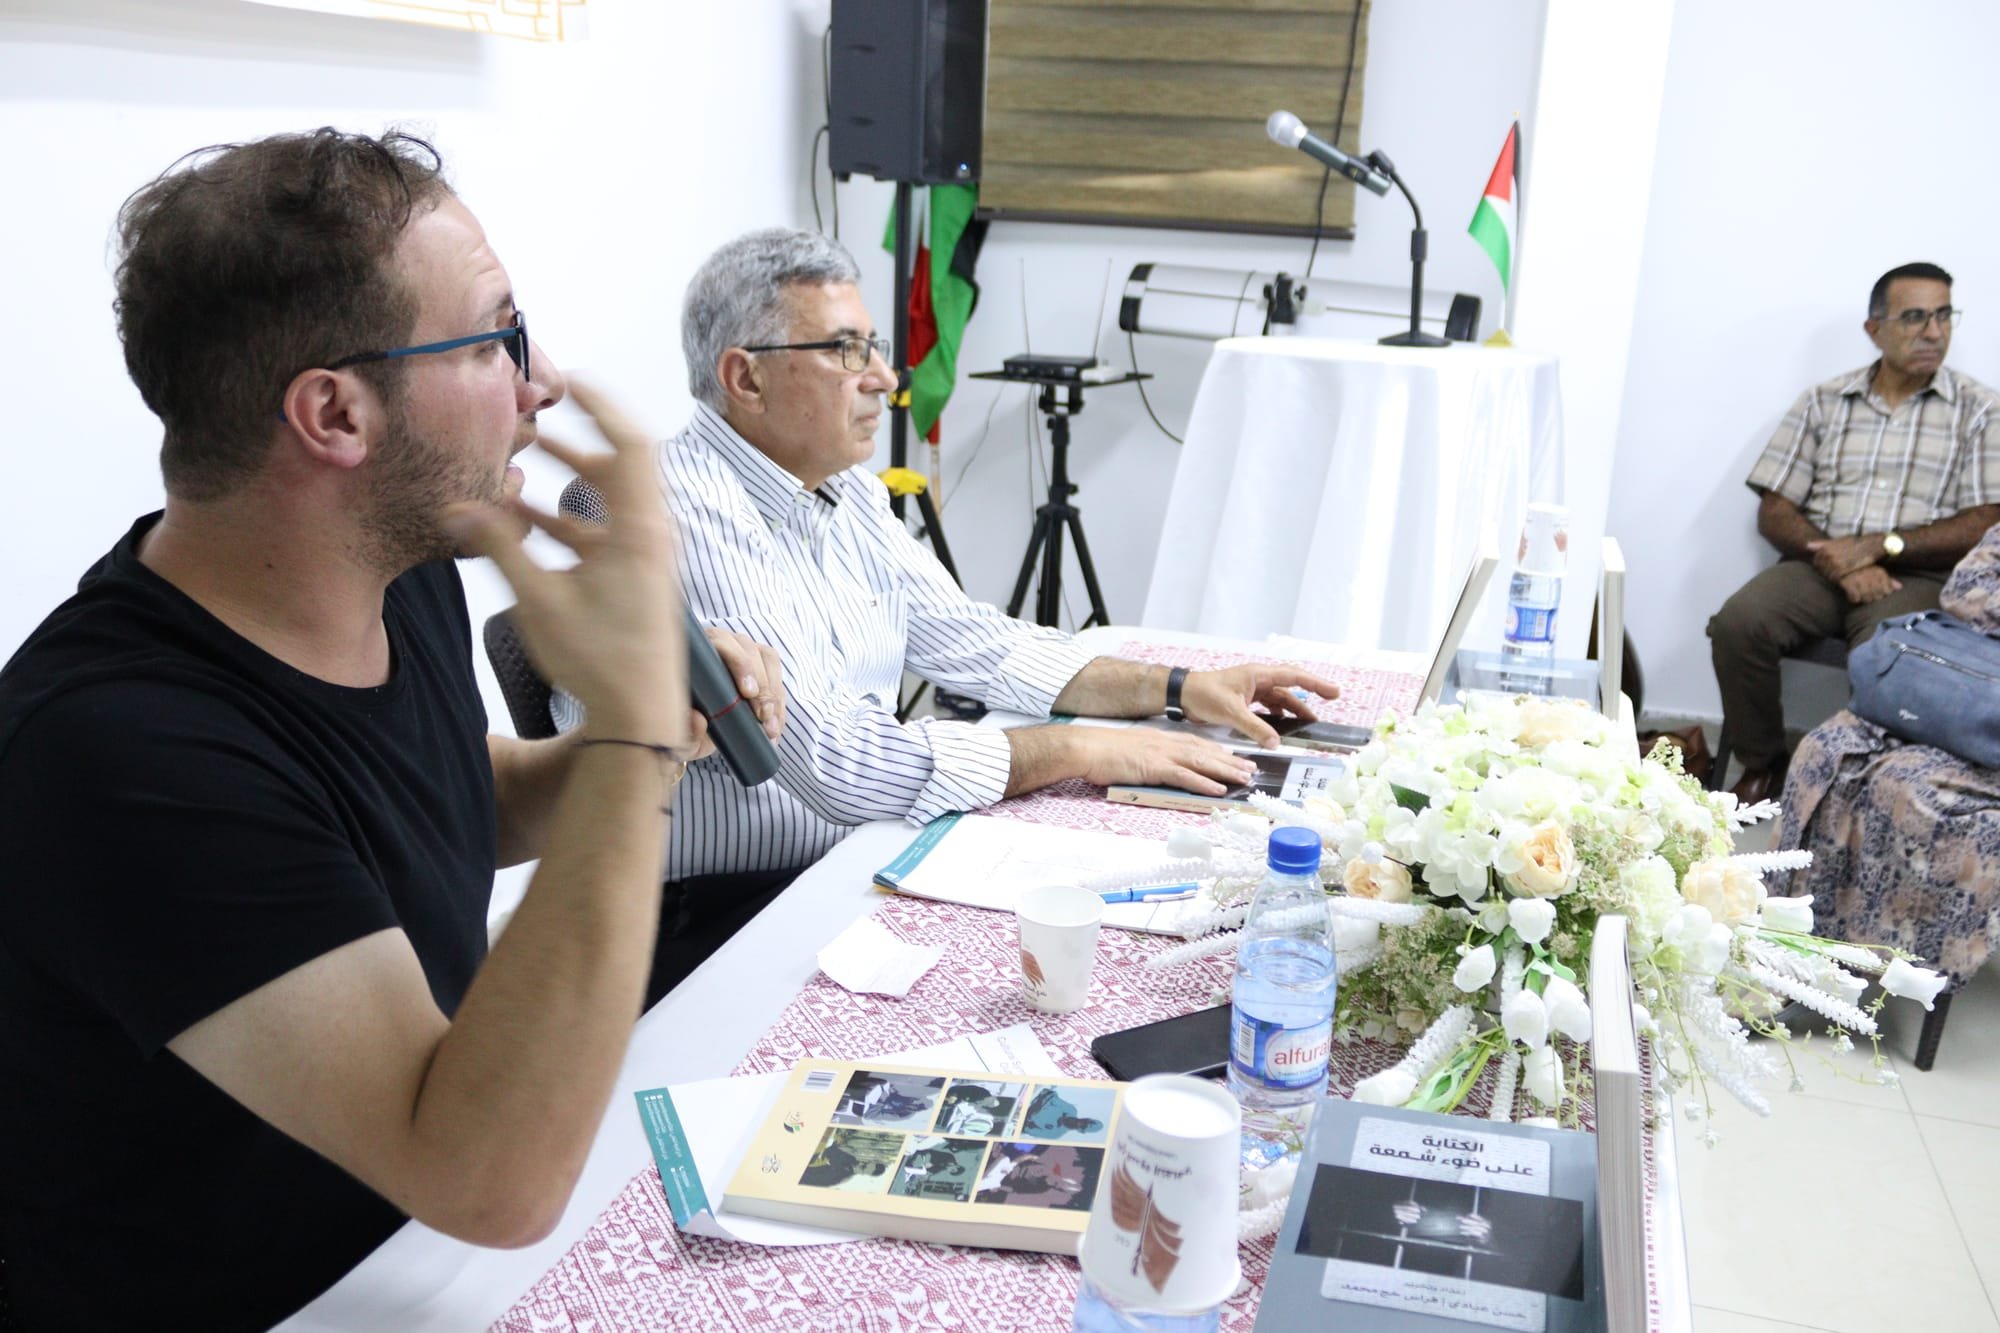 إطلاق كتاب "الكتابة على ضوء شمعة" لمجموعة أسرى فلسطينيين